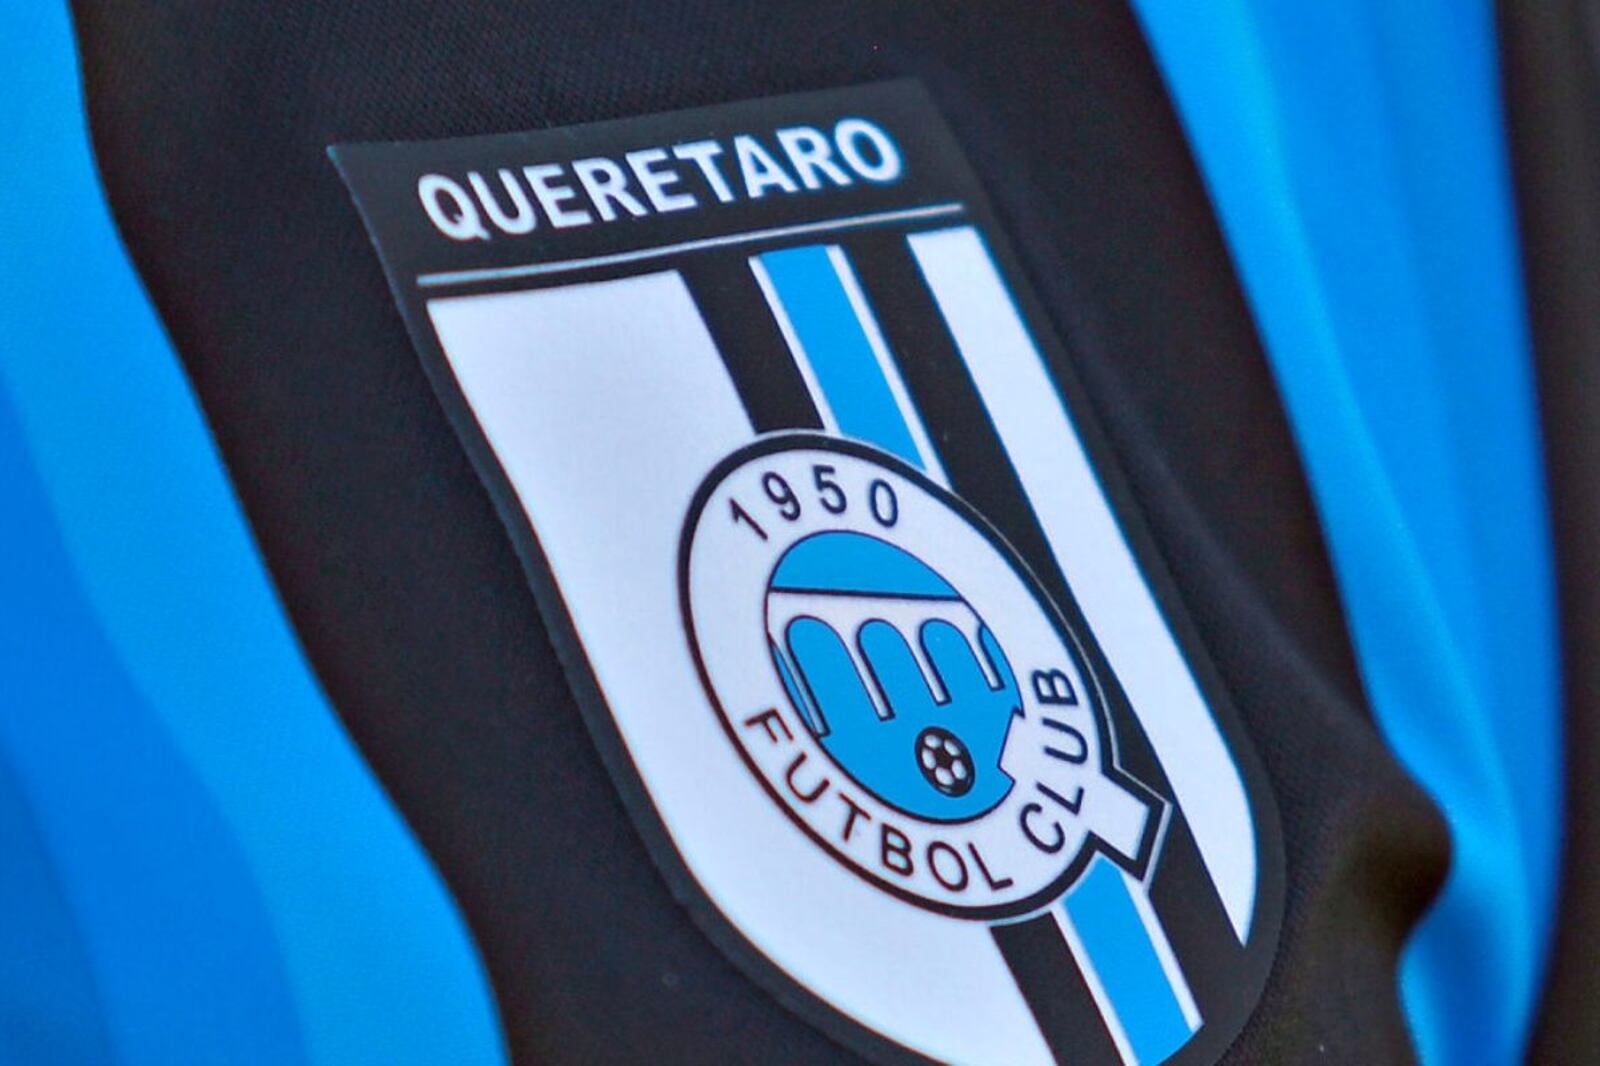 ¡Adiós Querétaro! No se esperaron contra Tigres, el club da una noticia urgente